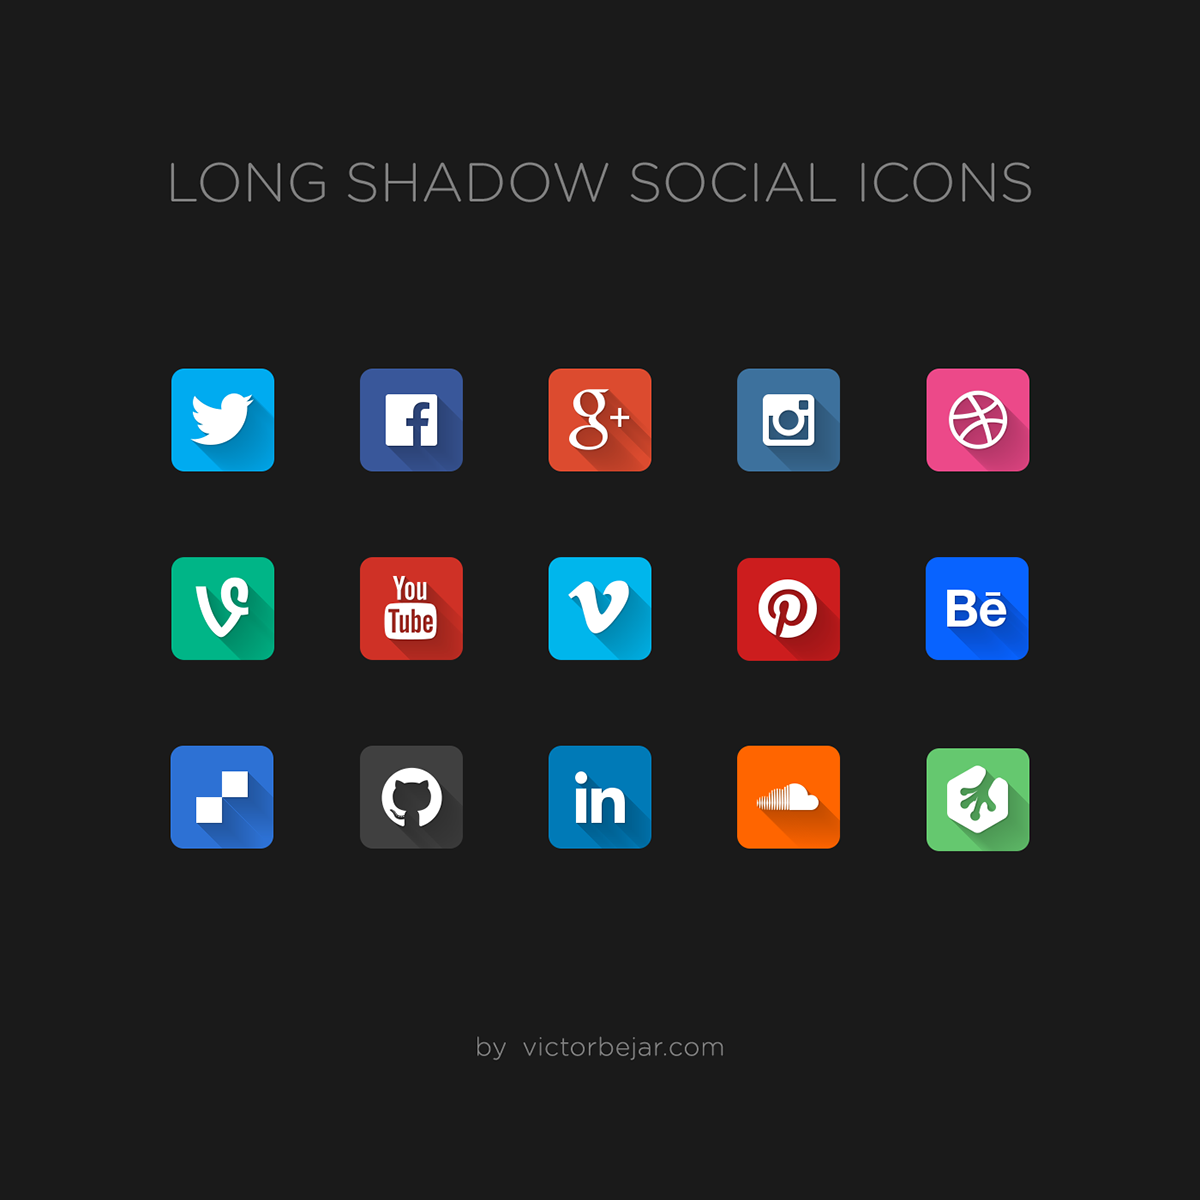 icons Icon social social icons